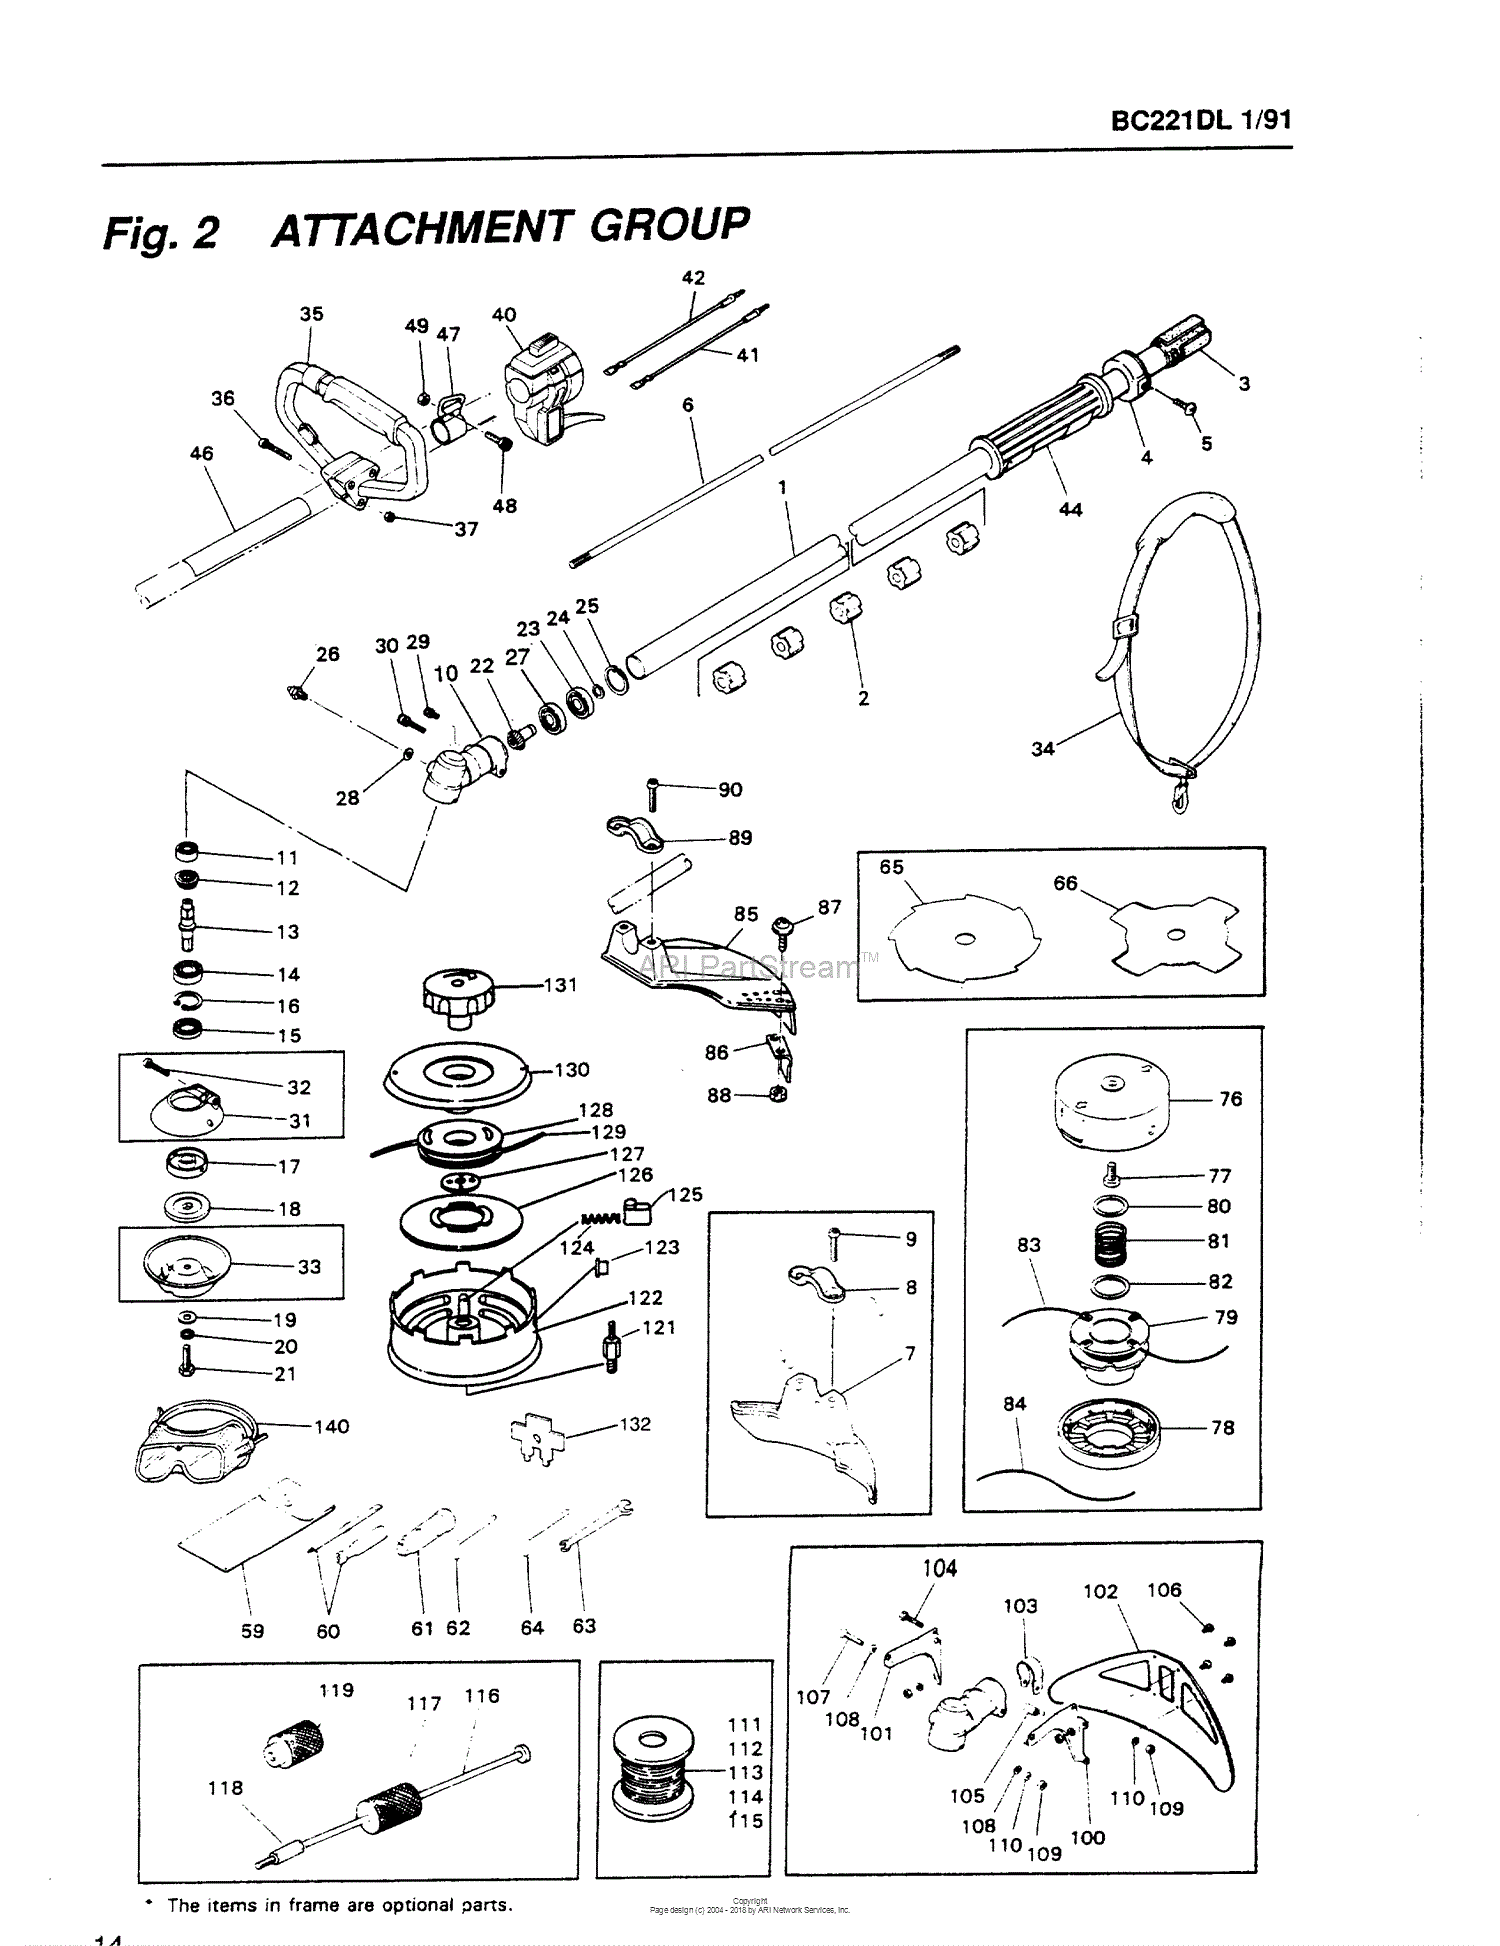 Need a parts list/schematic for a True Temper 63SL - Reel Talk - ORCA